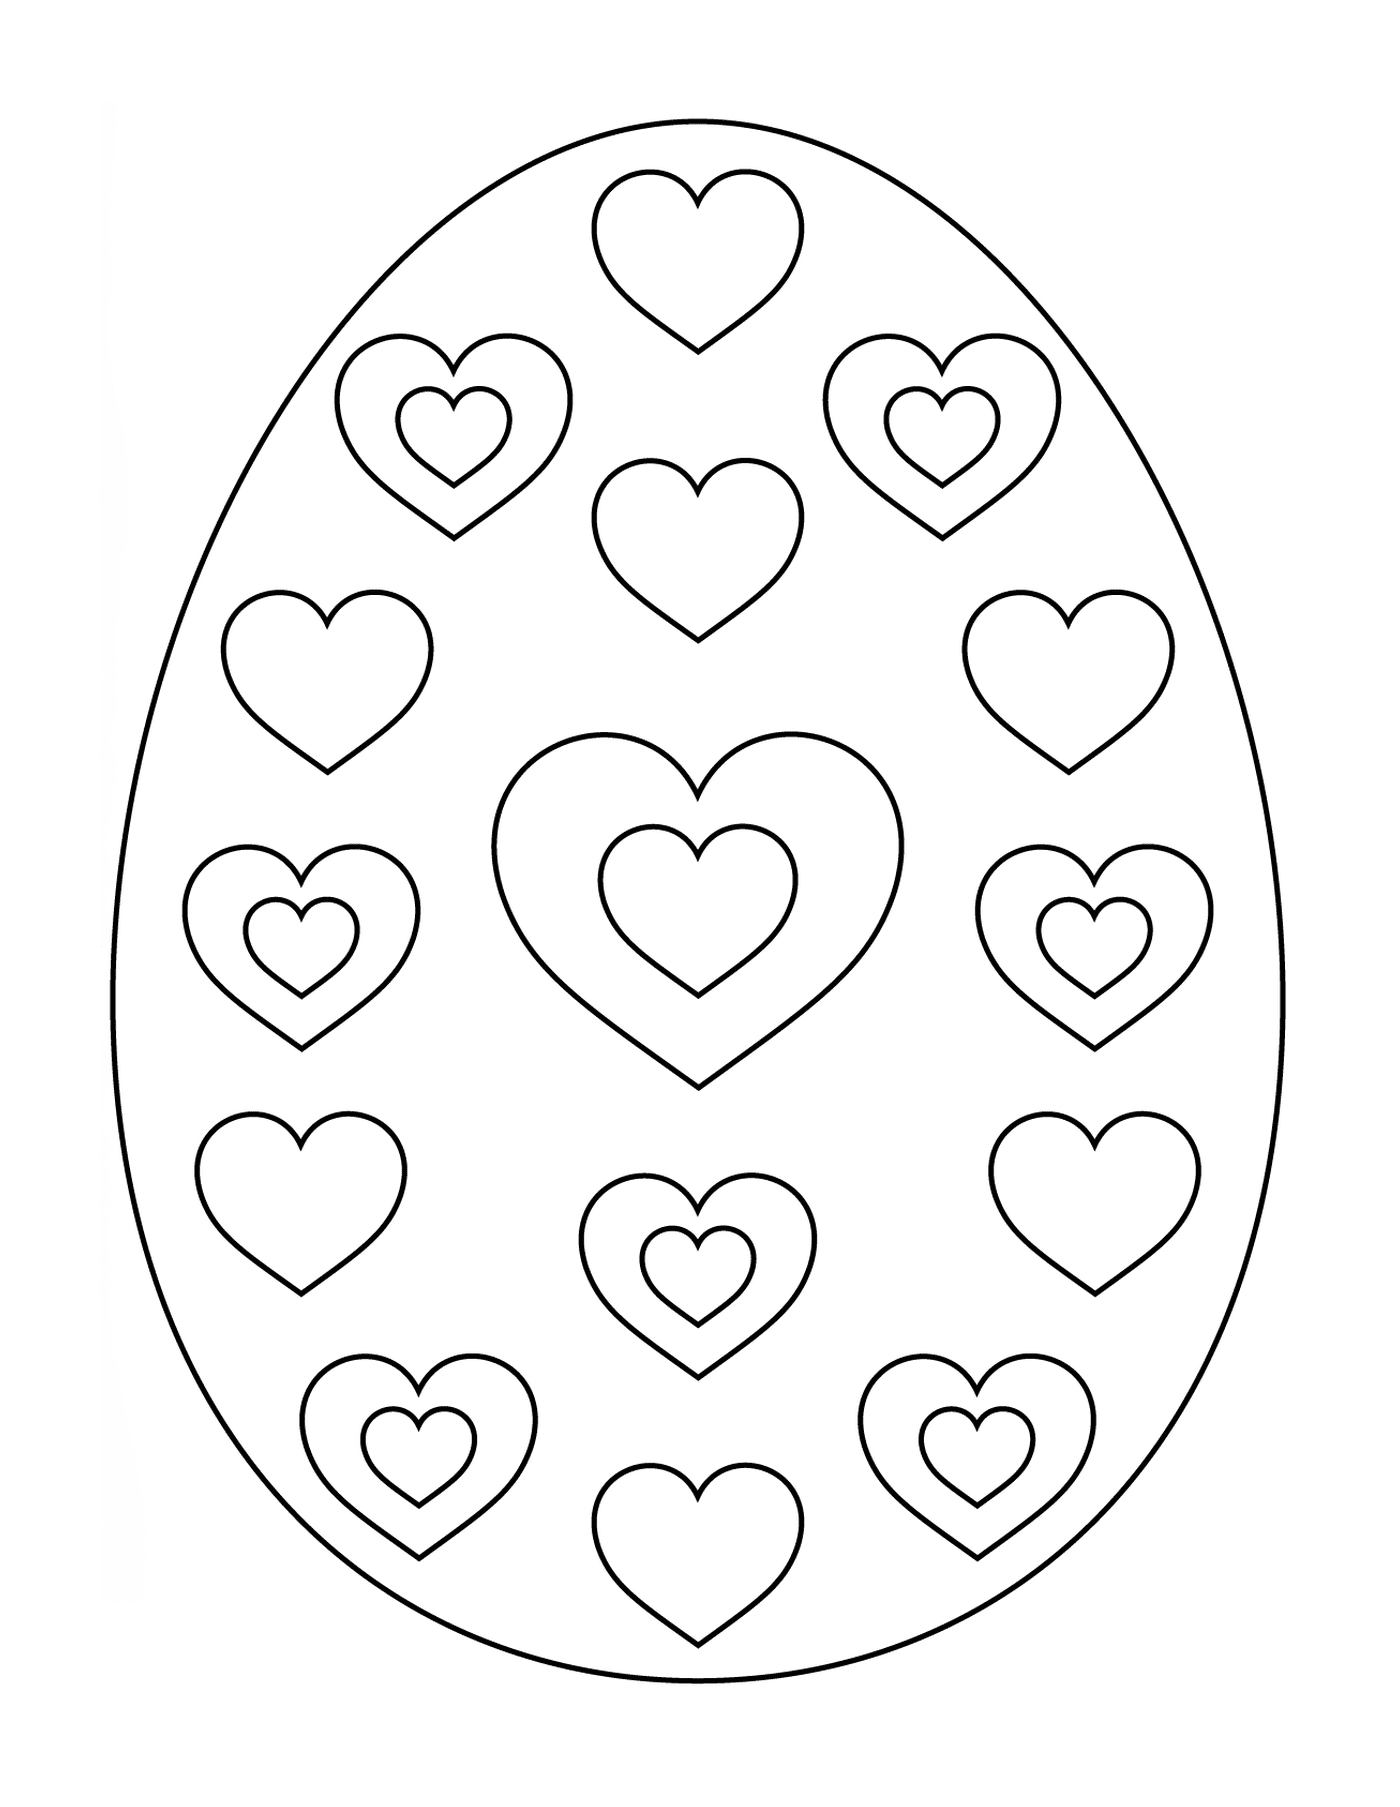 coloriage oeuf de paques avec hearts